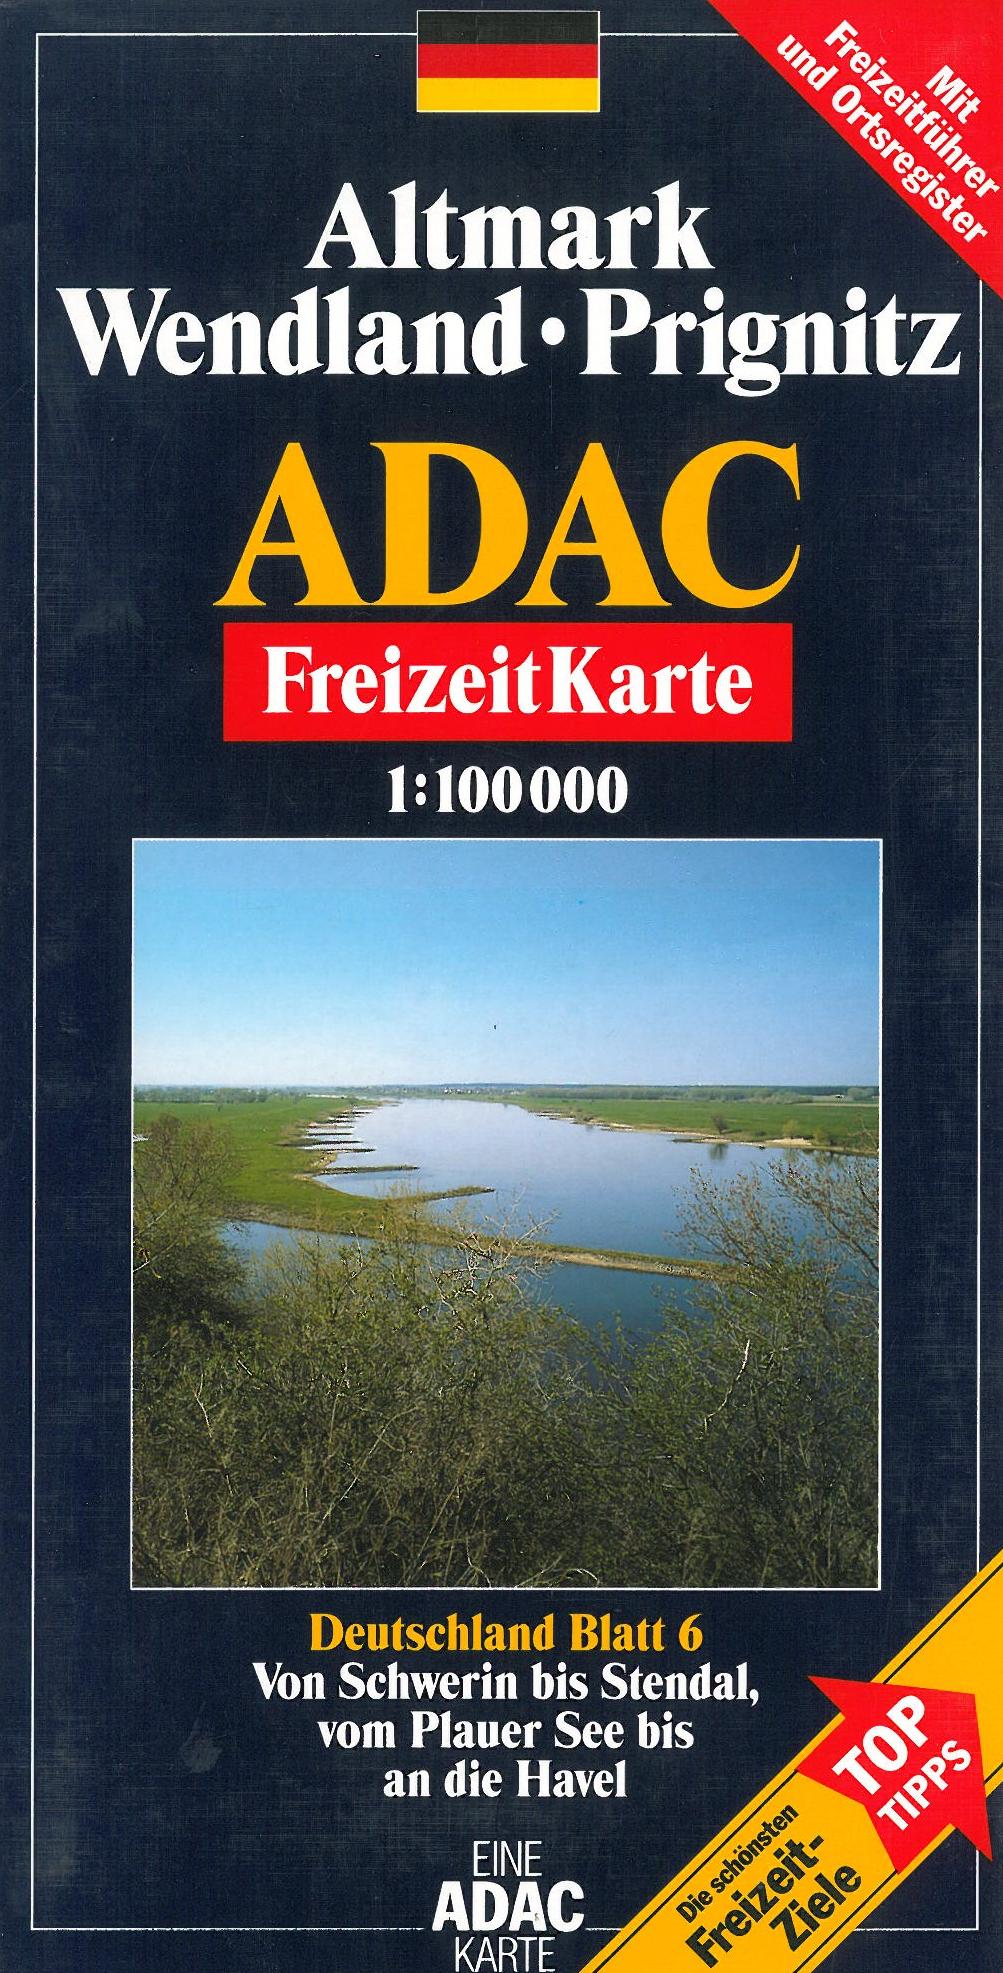 ADAC FreizeitKarte Deutschland Blad 6: Altmark, Wendland, Prignitz